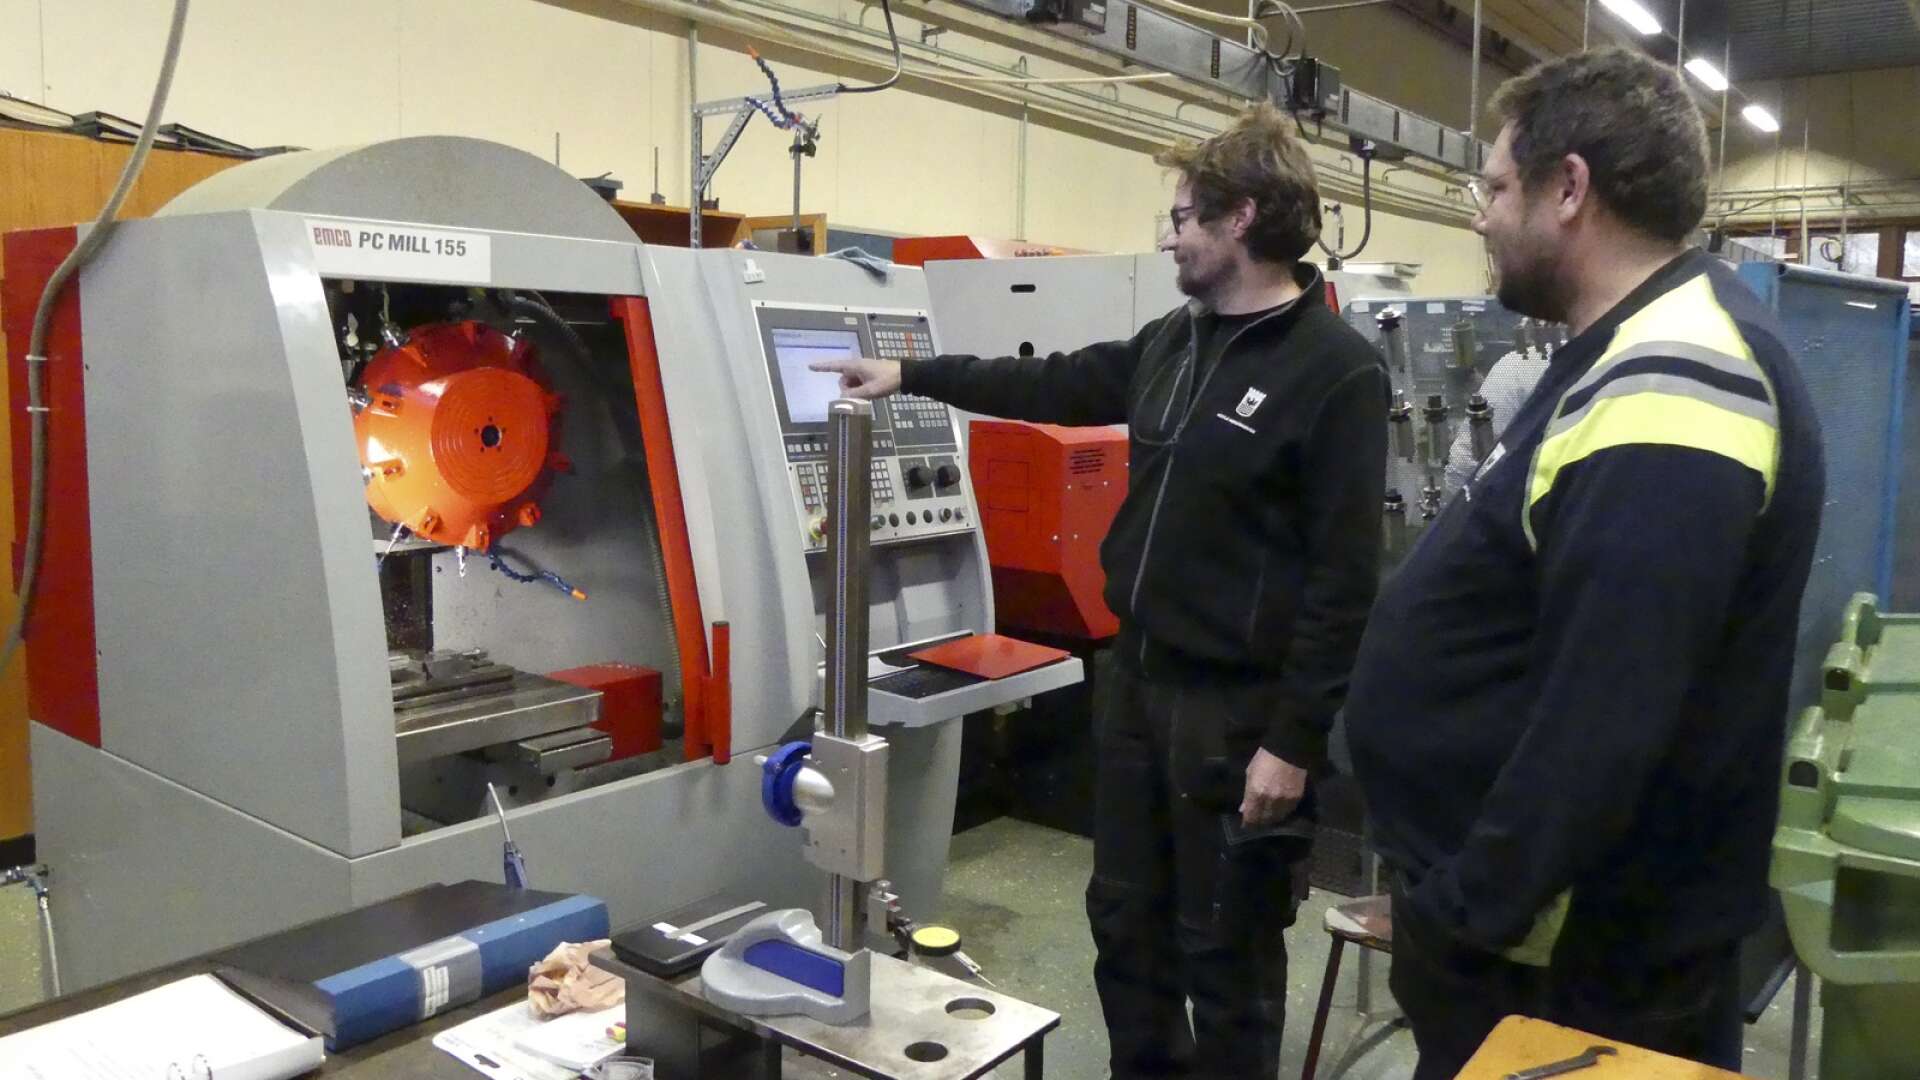 Industriteknik programmet kommer tillbaka till Herrgårn&apos; till nästa läsår. Här lärarna Ulrik Loftman och Andreas Björklund vid en CNC-styrd maskin.